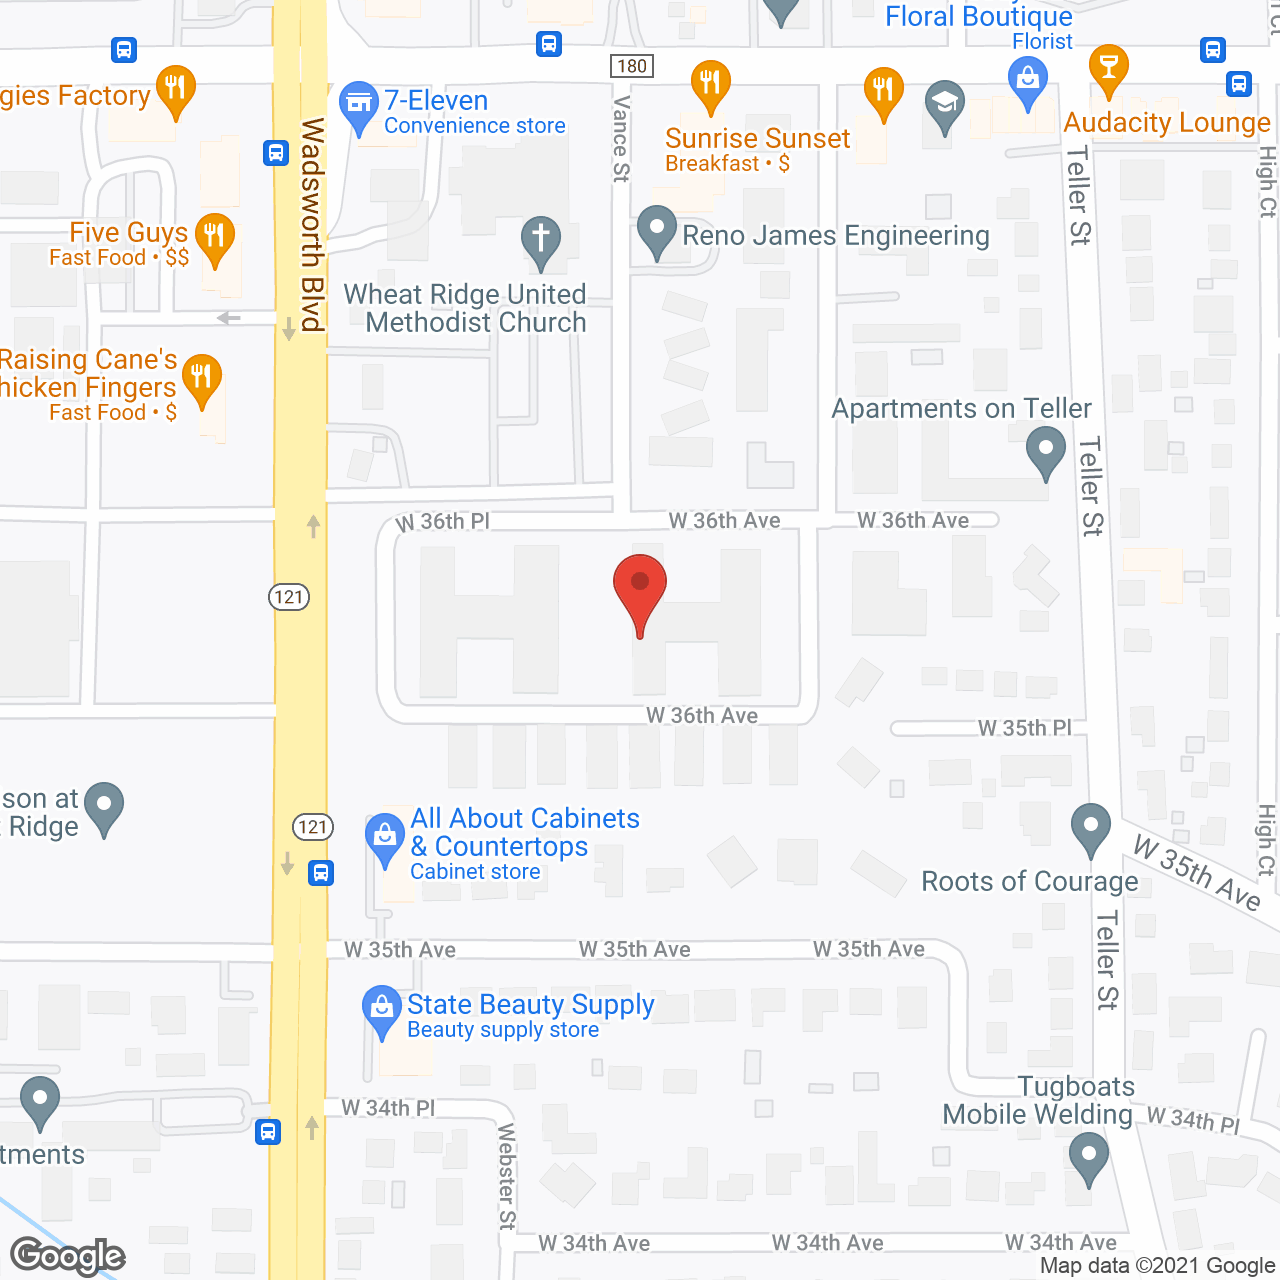 Morningside in google map